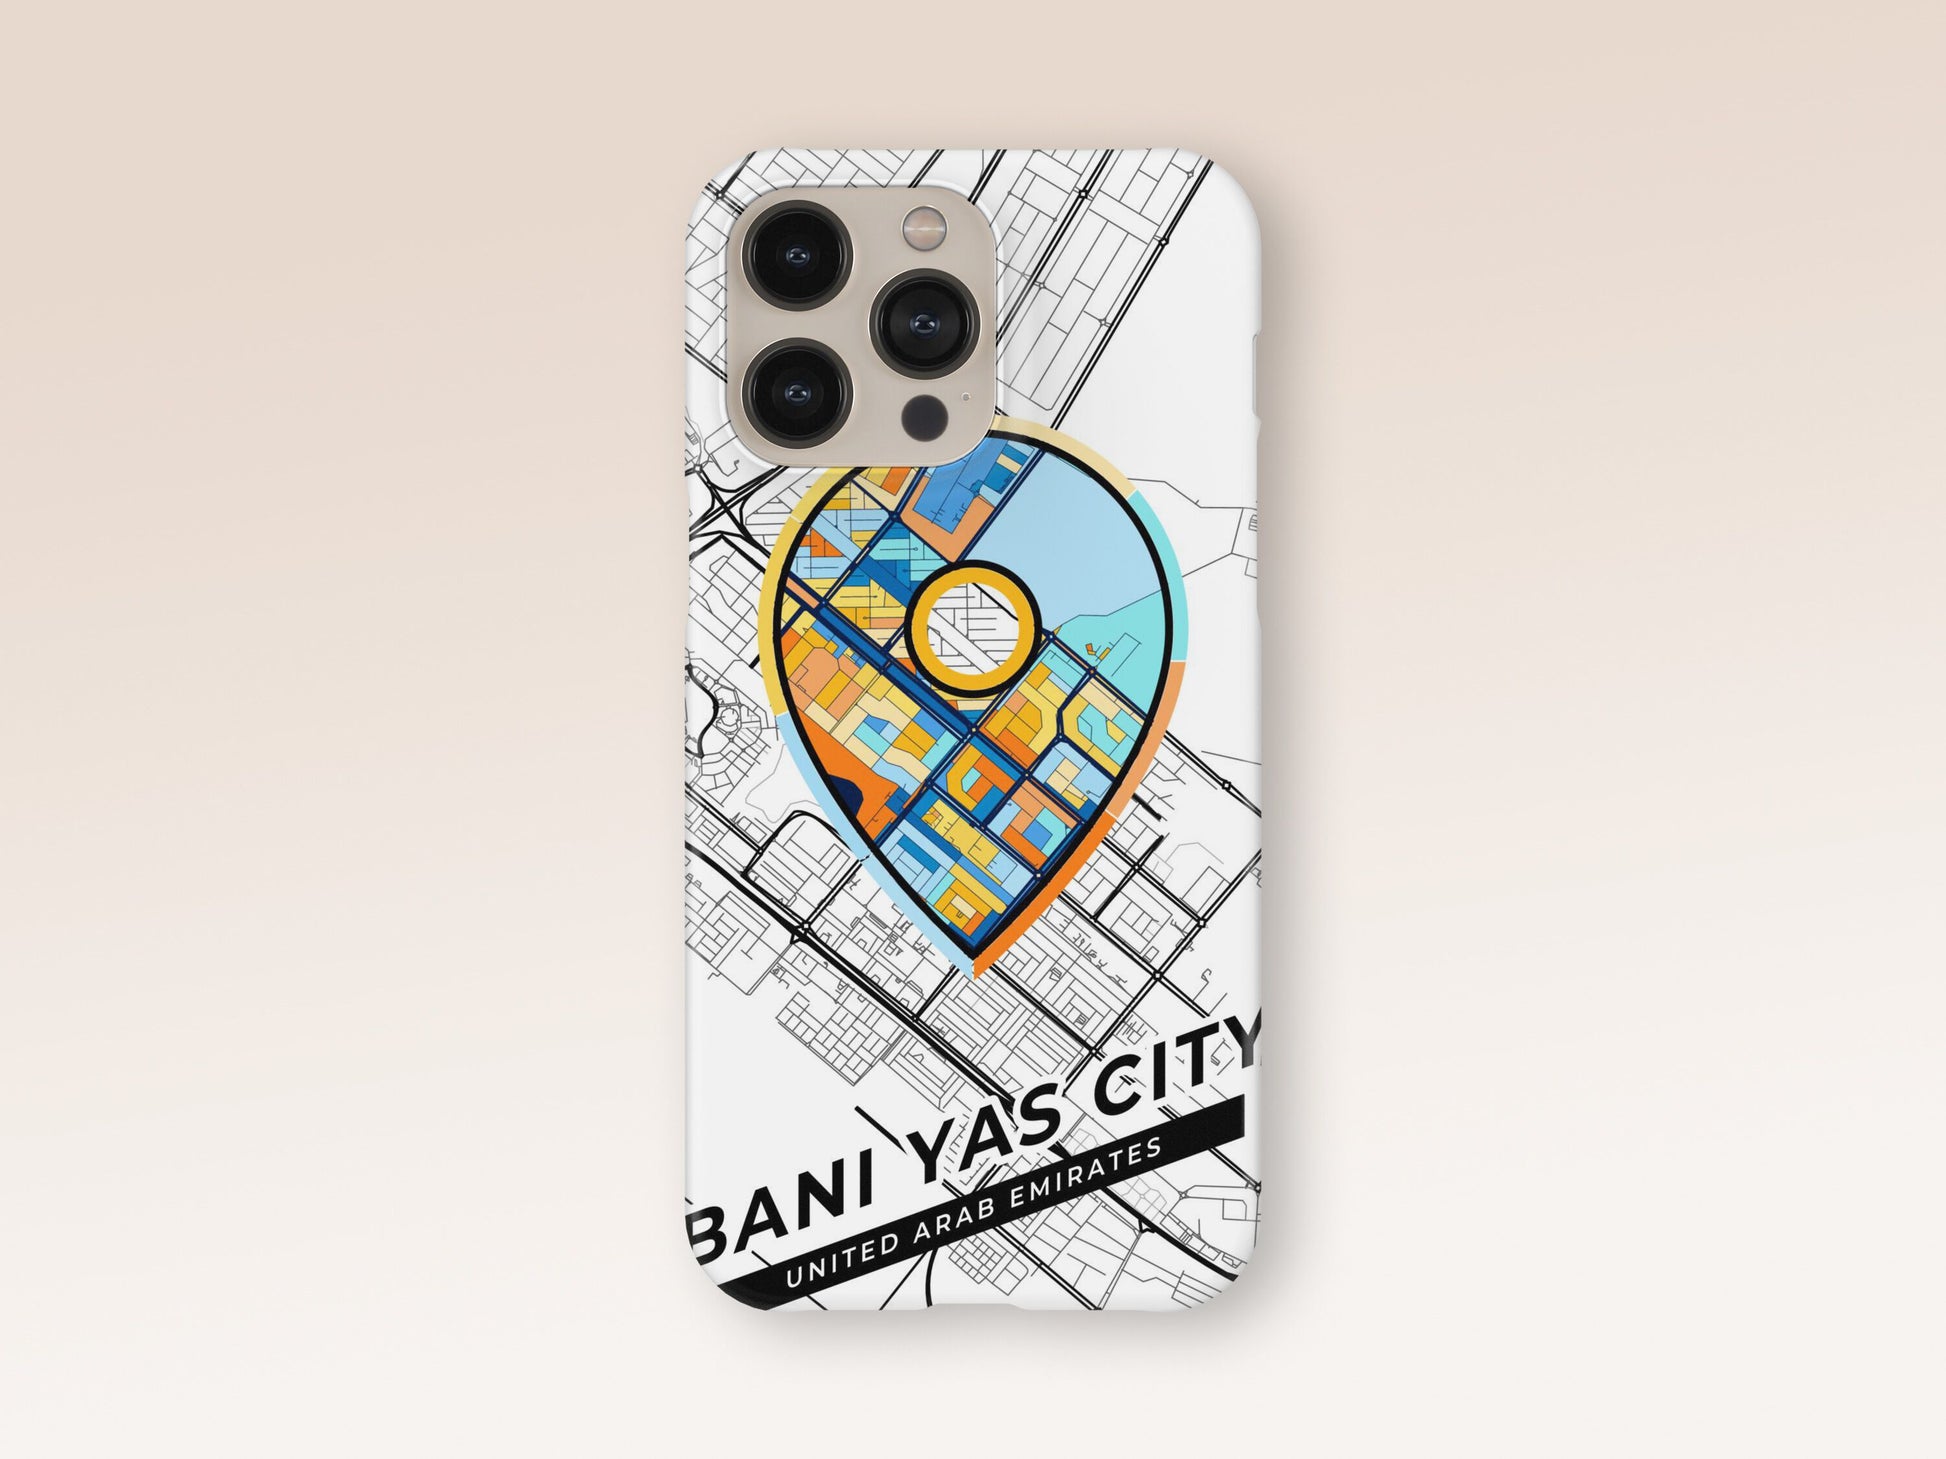 Bani Yas City United Arab Emirates slim phone case with colorful icon. Birthday, wedding or housewarming gift. Couple match cases. 1